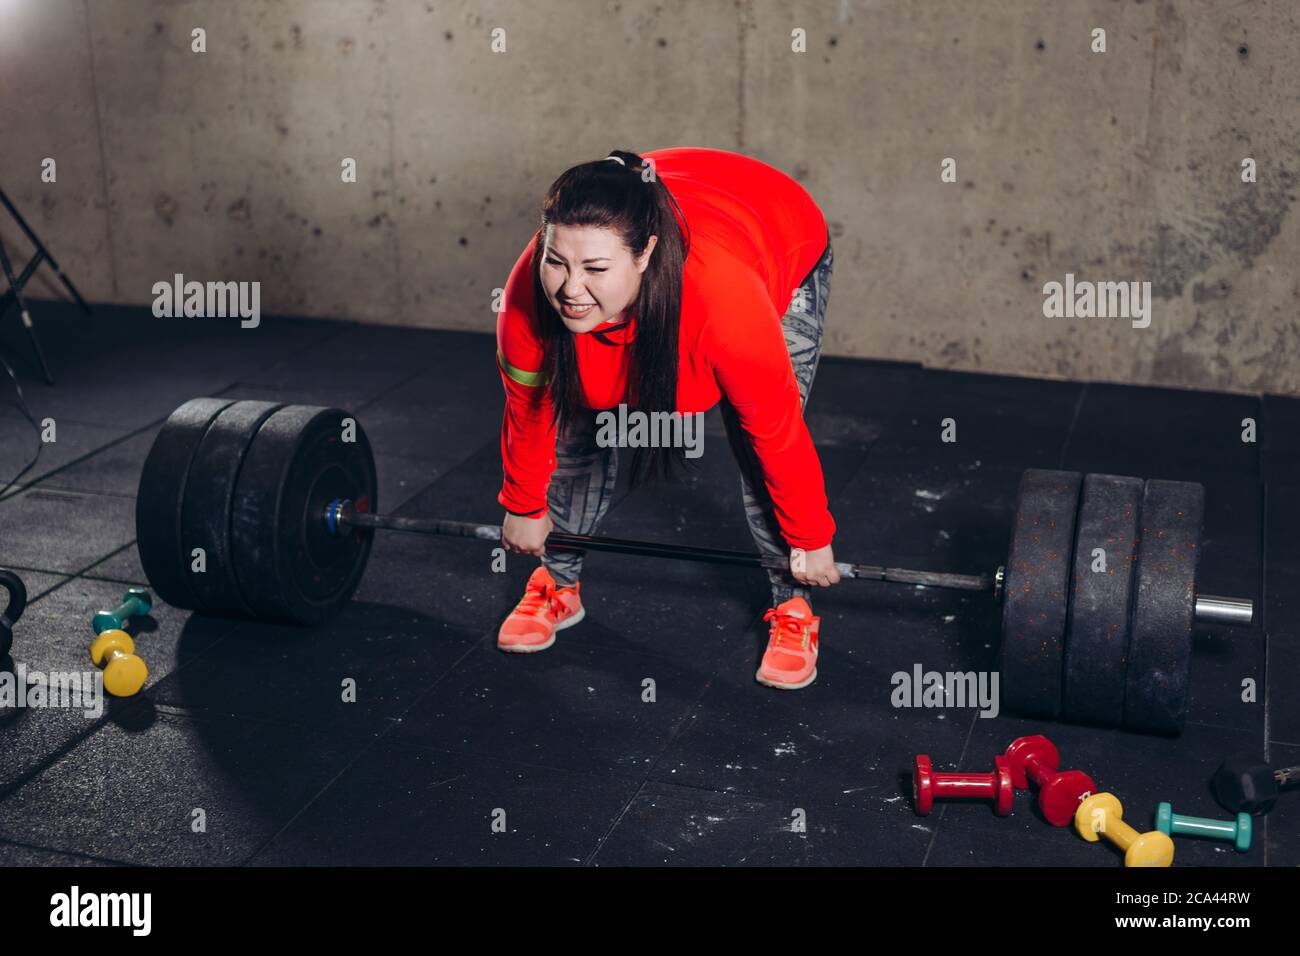 pump donna sta cercando di rompere il record in bodybuilding. dangerouse donna. foto a lunghezza intera Foto Stock